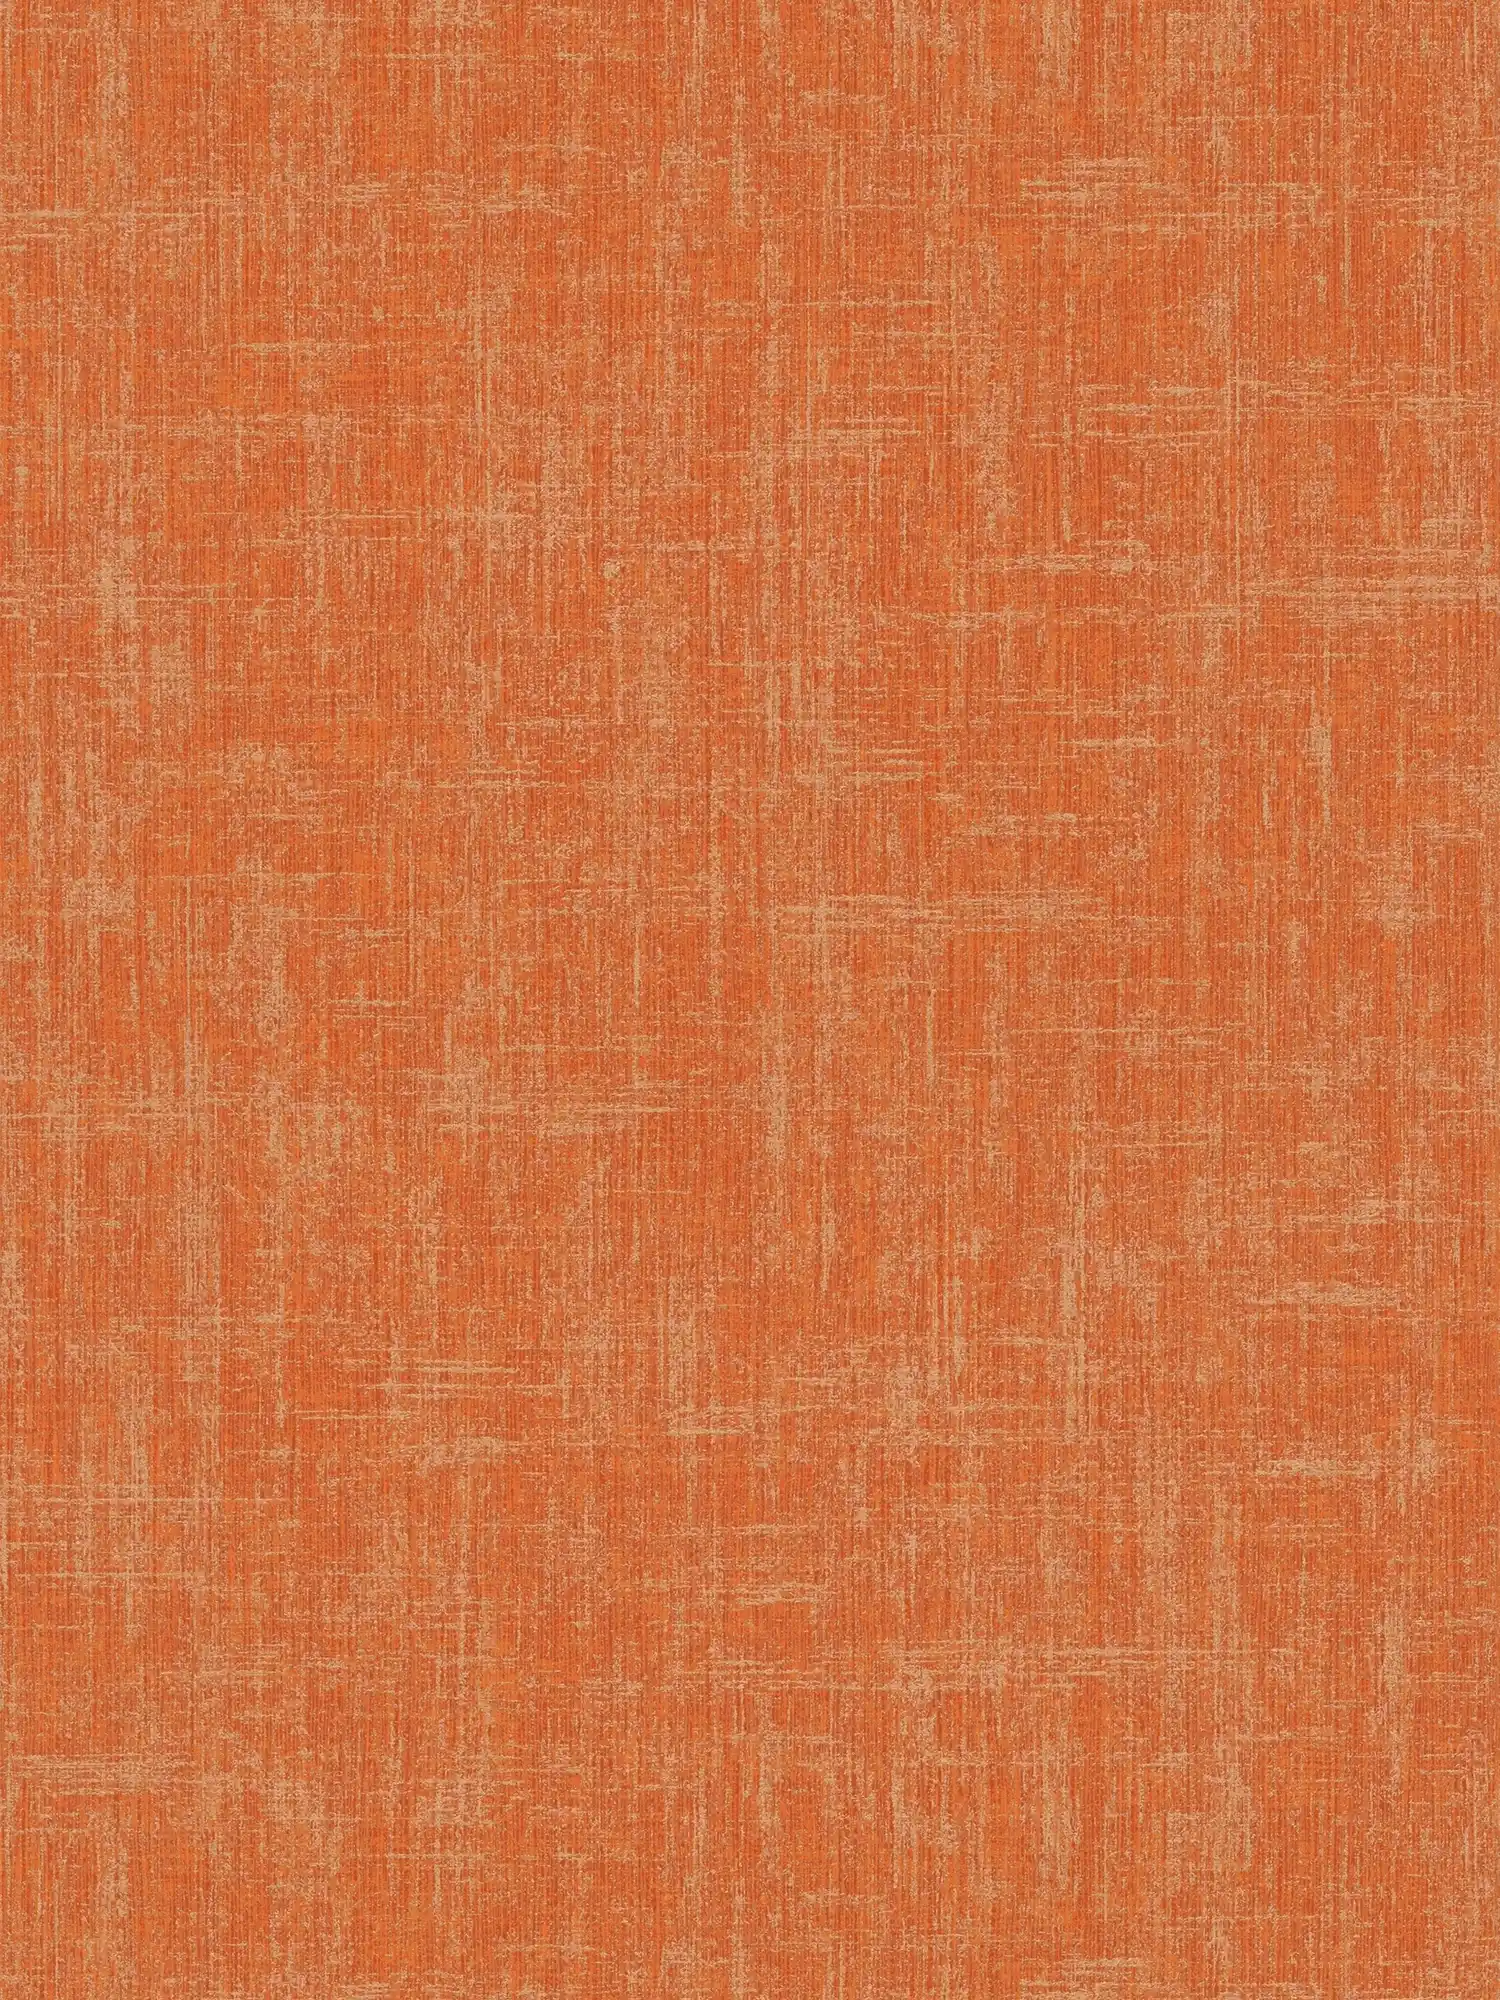 Papier peint orange avec dessin de la structure du lin
